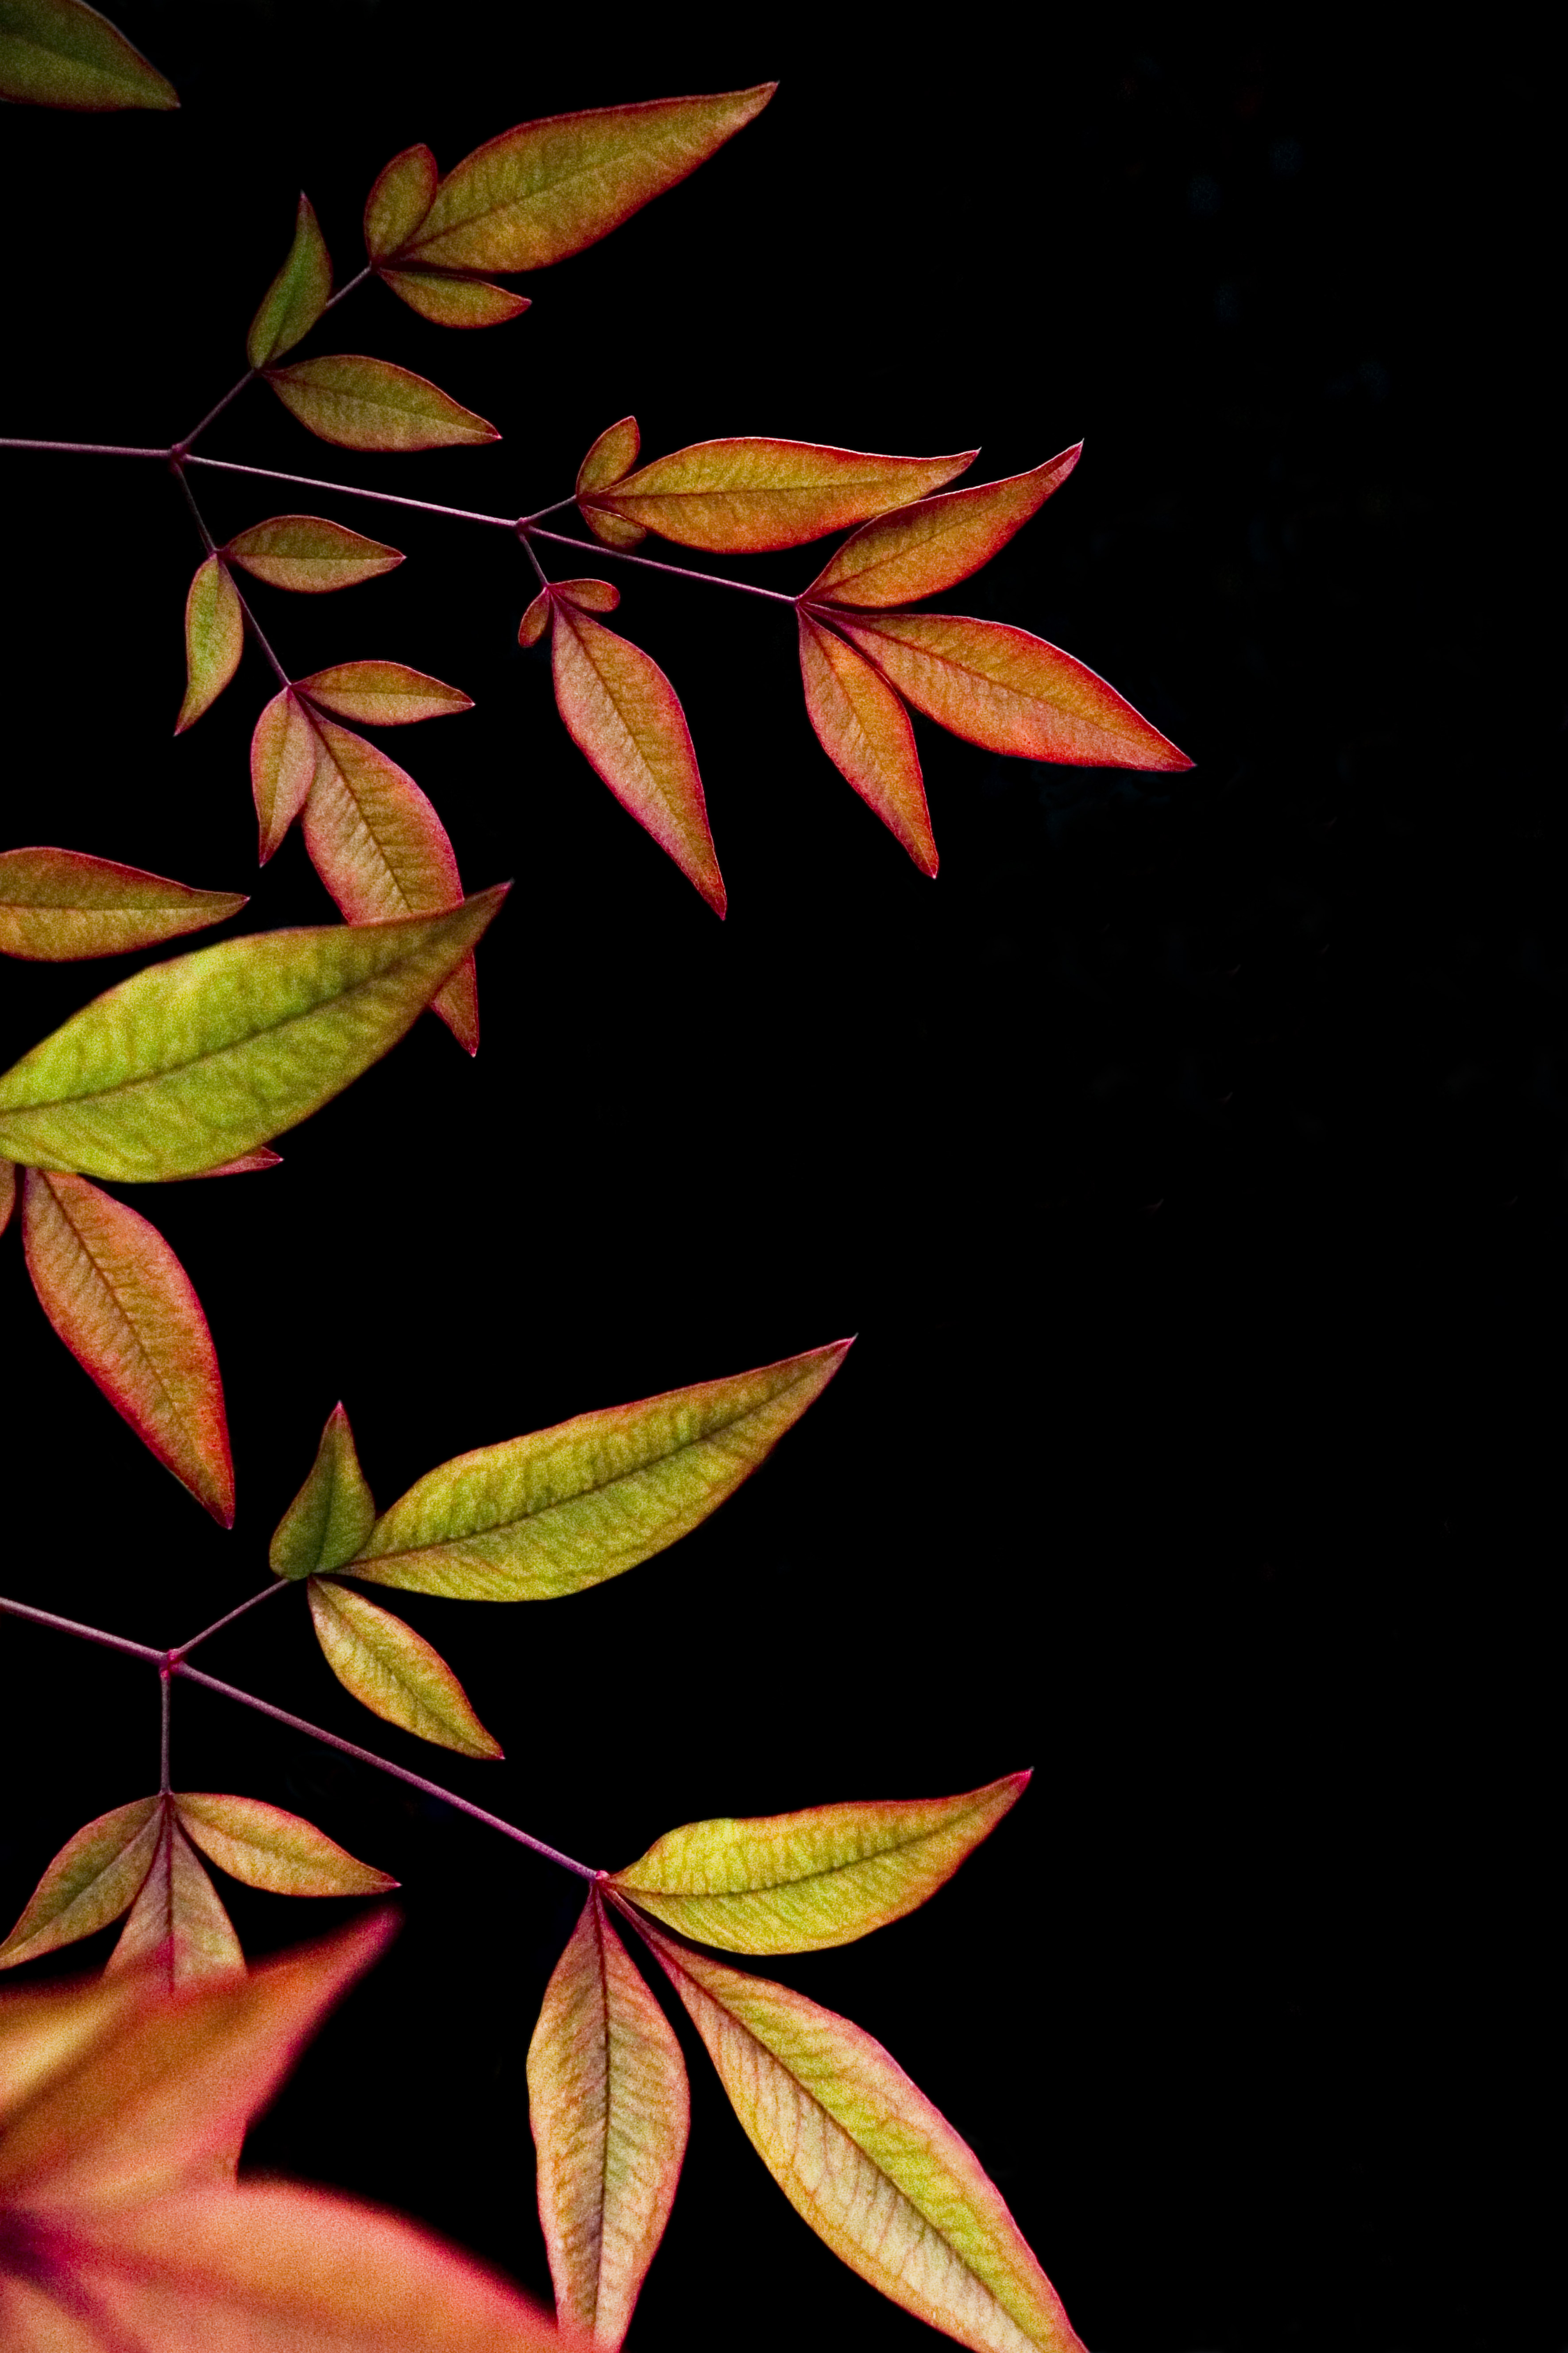 dark, leaves, black background, branch wallpaper for mobile